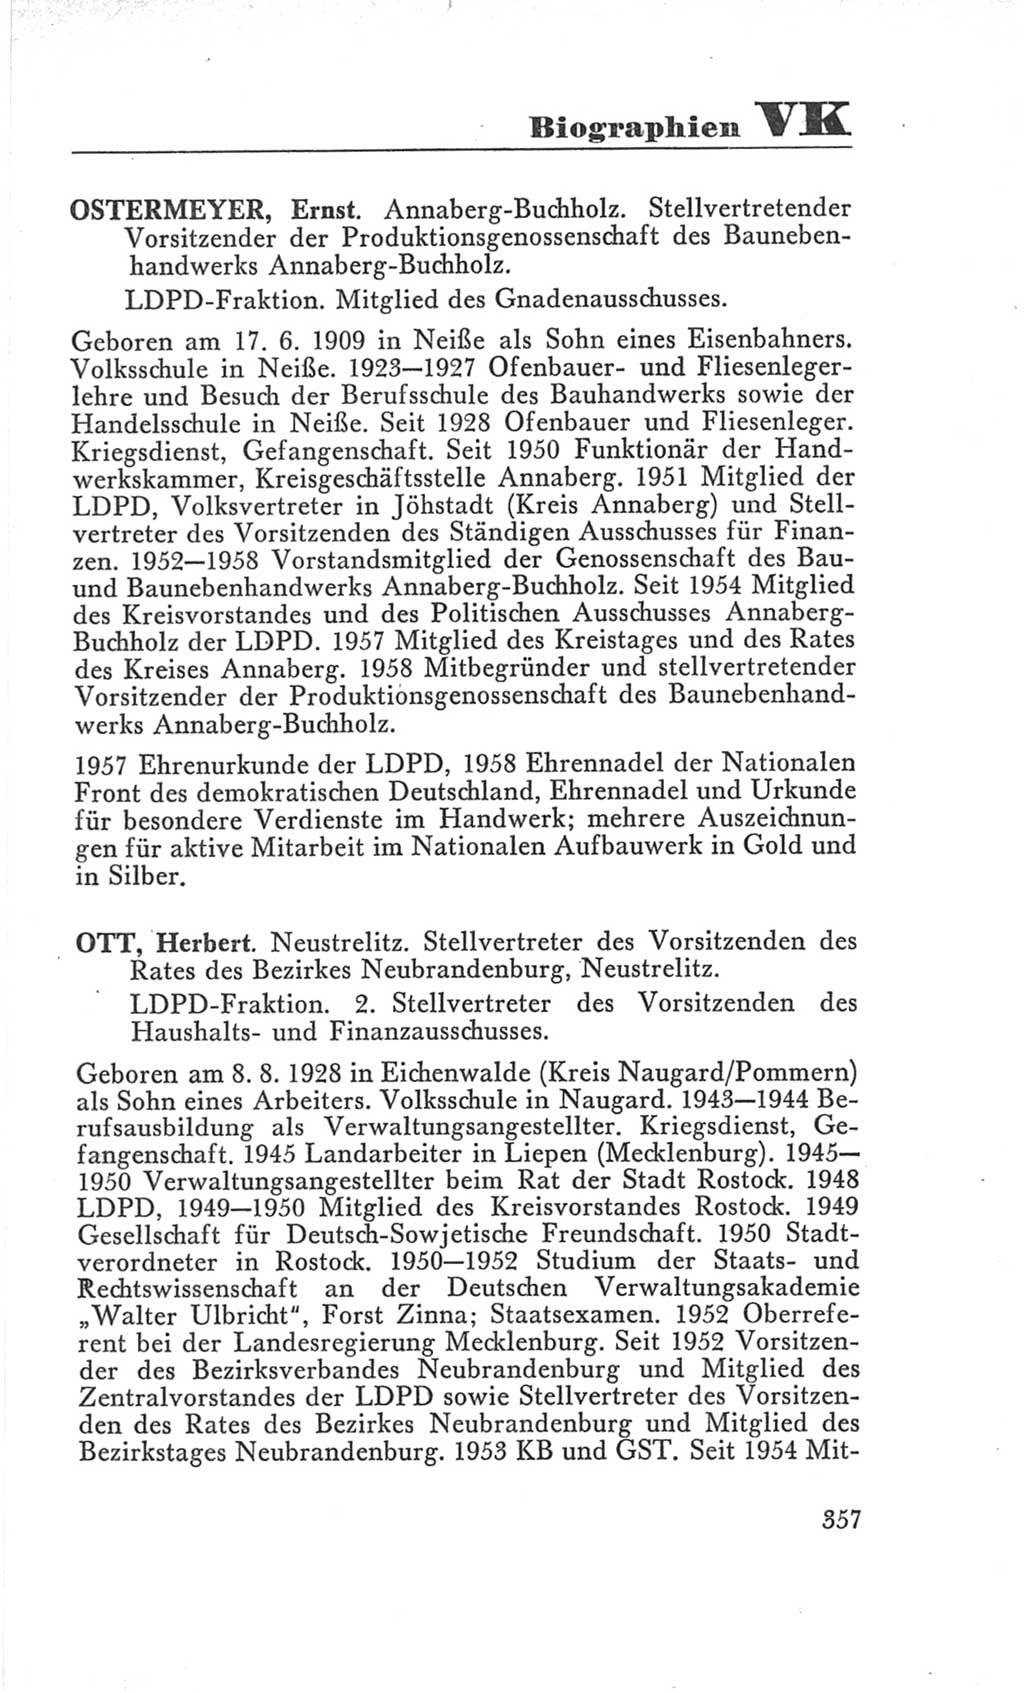 Handbuch der Volkskammer (VK) der Deutschen Demokratischen Republik (DDR), 3. Wahlperiode 1958-1963, Seite 357 (Hdb. VK. DDR 3. WP. 1958-1963, S. 357)